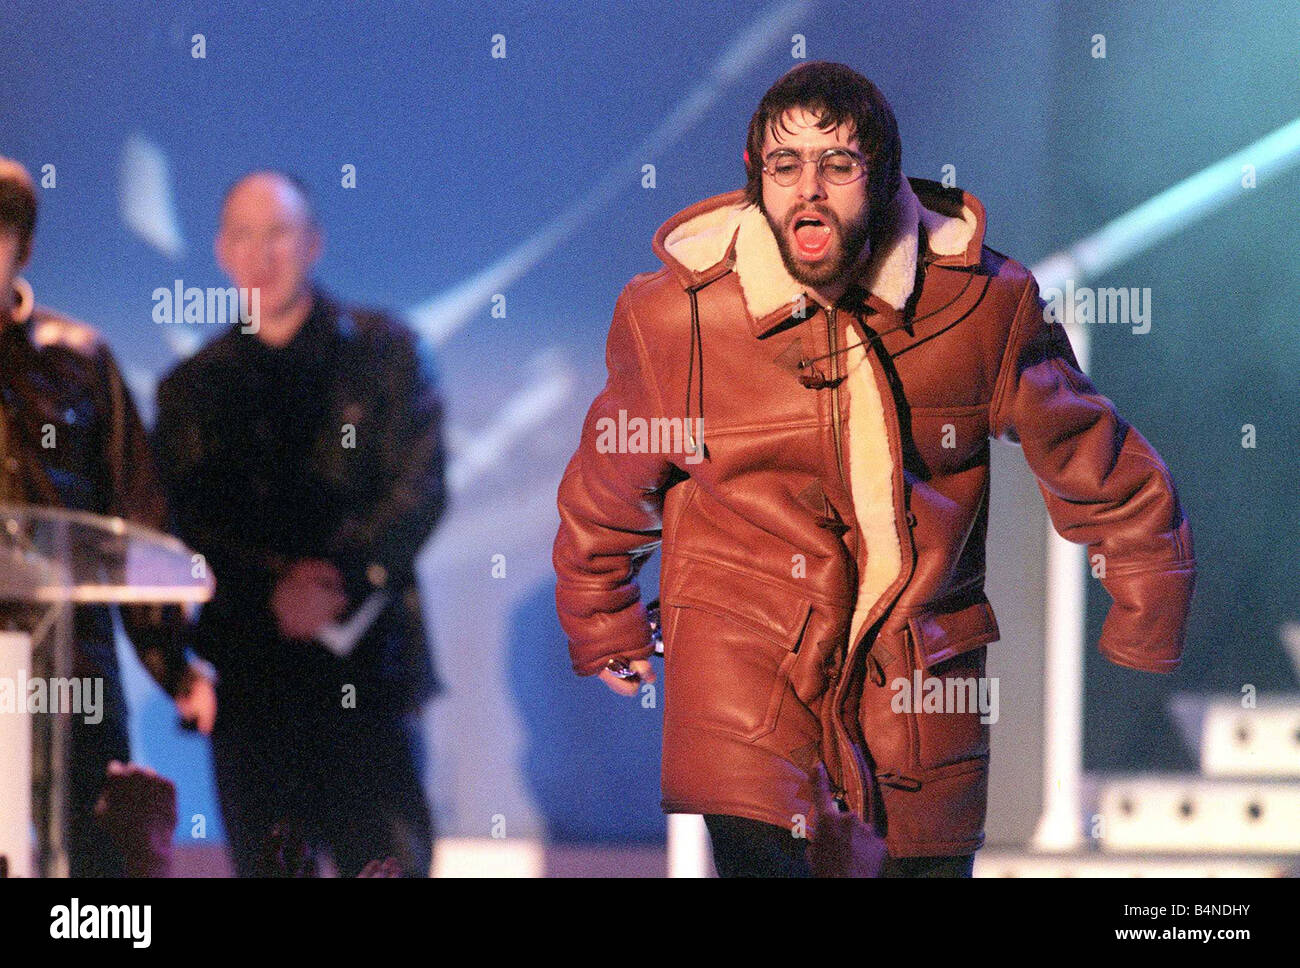 Les Brit Awards : meilleur groupe britannique Février1996 Best Oasis Oasis  Wonderwall Vidéo britannique Meilleur Album britannique quel s l'histoire  gloire du matin ici Oasis Liam Gallagher insulte la foule Photo Stock -